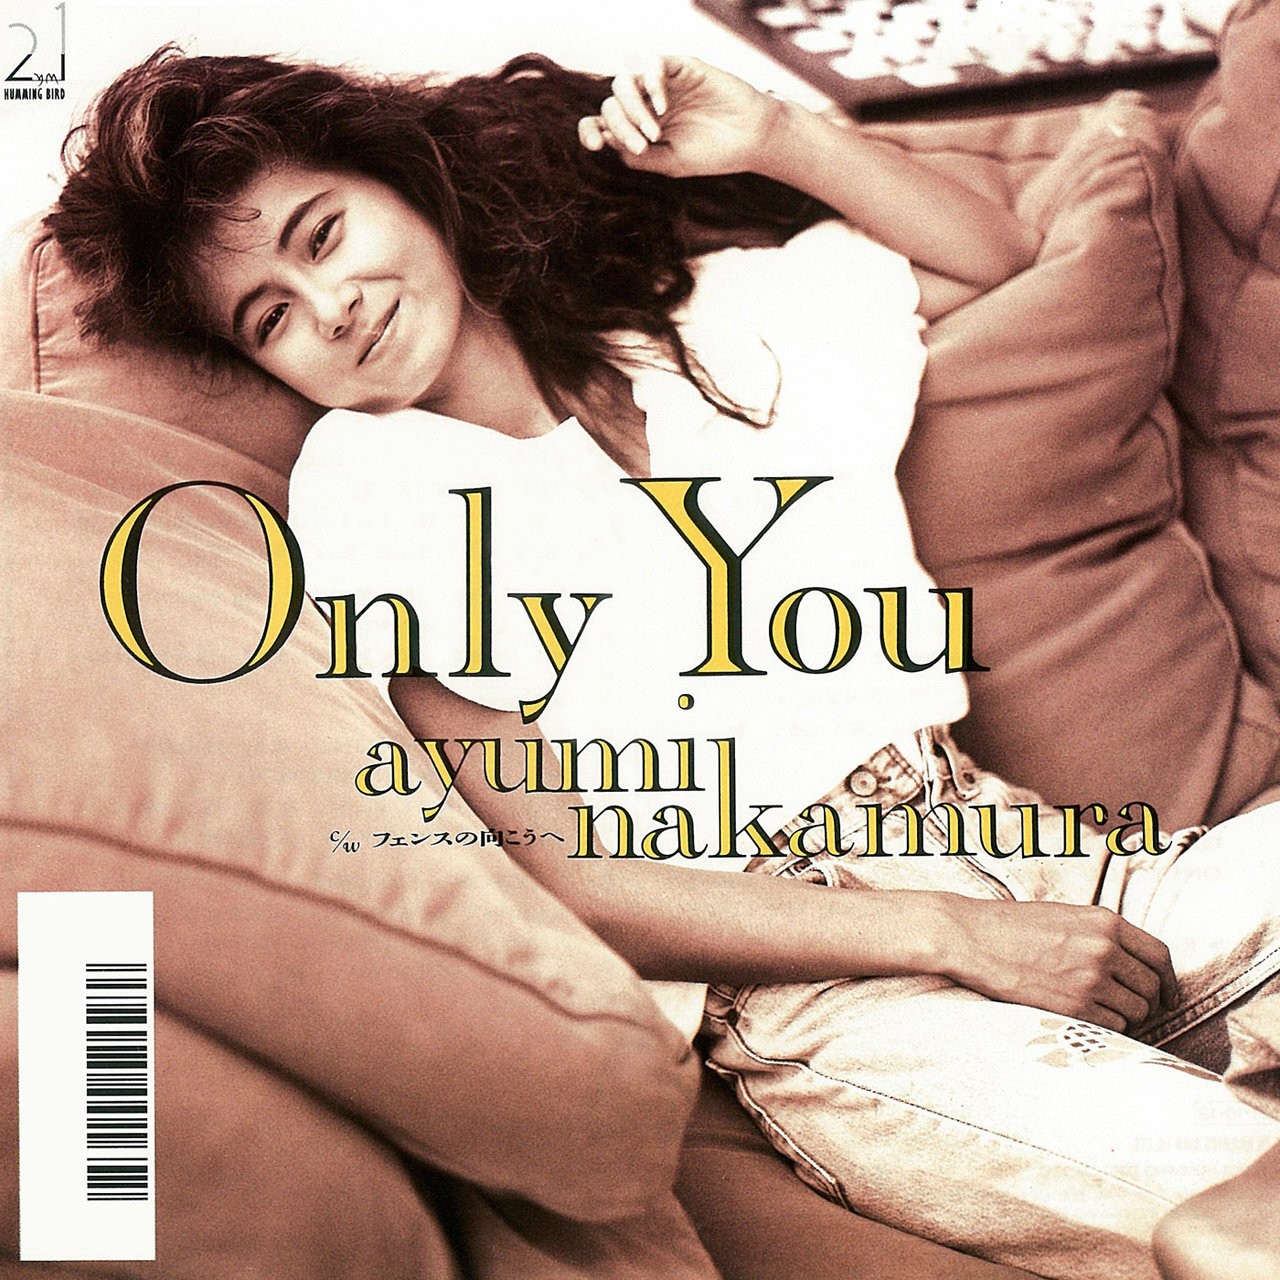 中村あゆみ (Ayumi Nakamura) – Only You ⁄ フェンスの向こうへ (2019 Remastered) (1988/2019) [FLAC 24bit/48kHz]